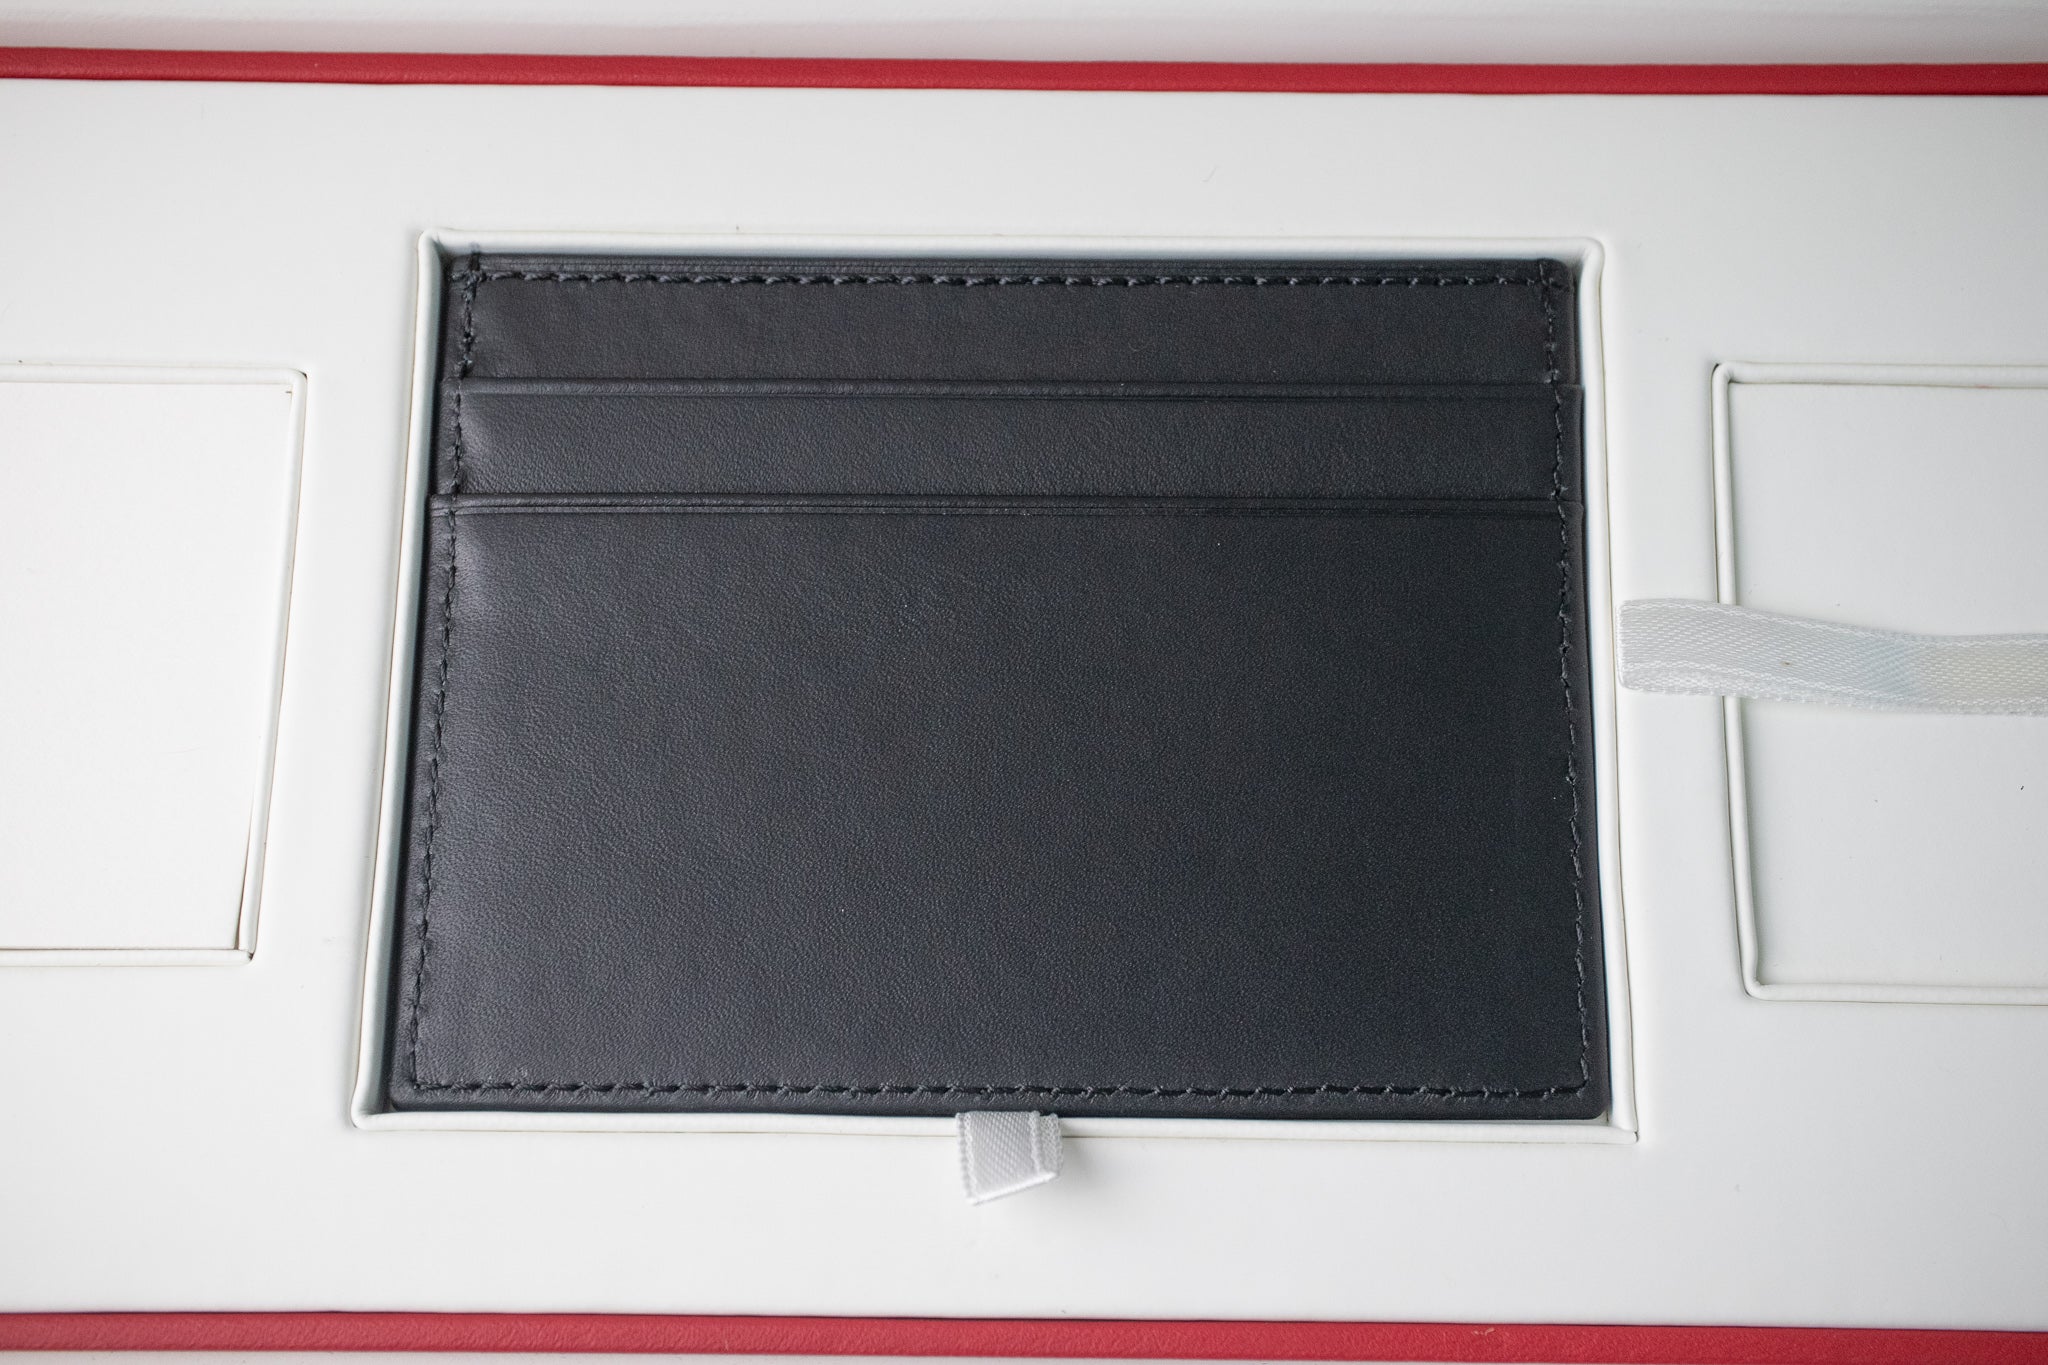 Omega Leather Card Holder Wallet